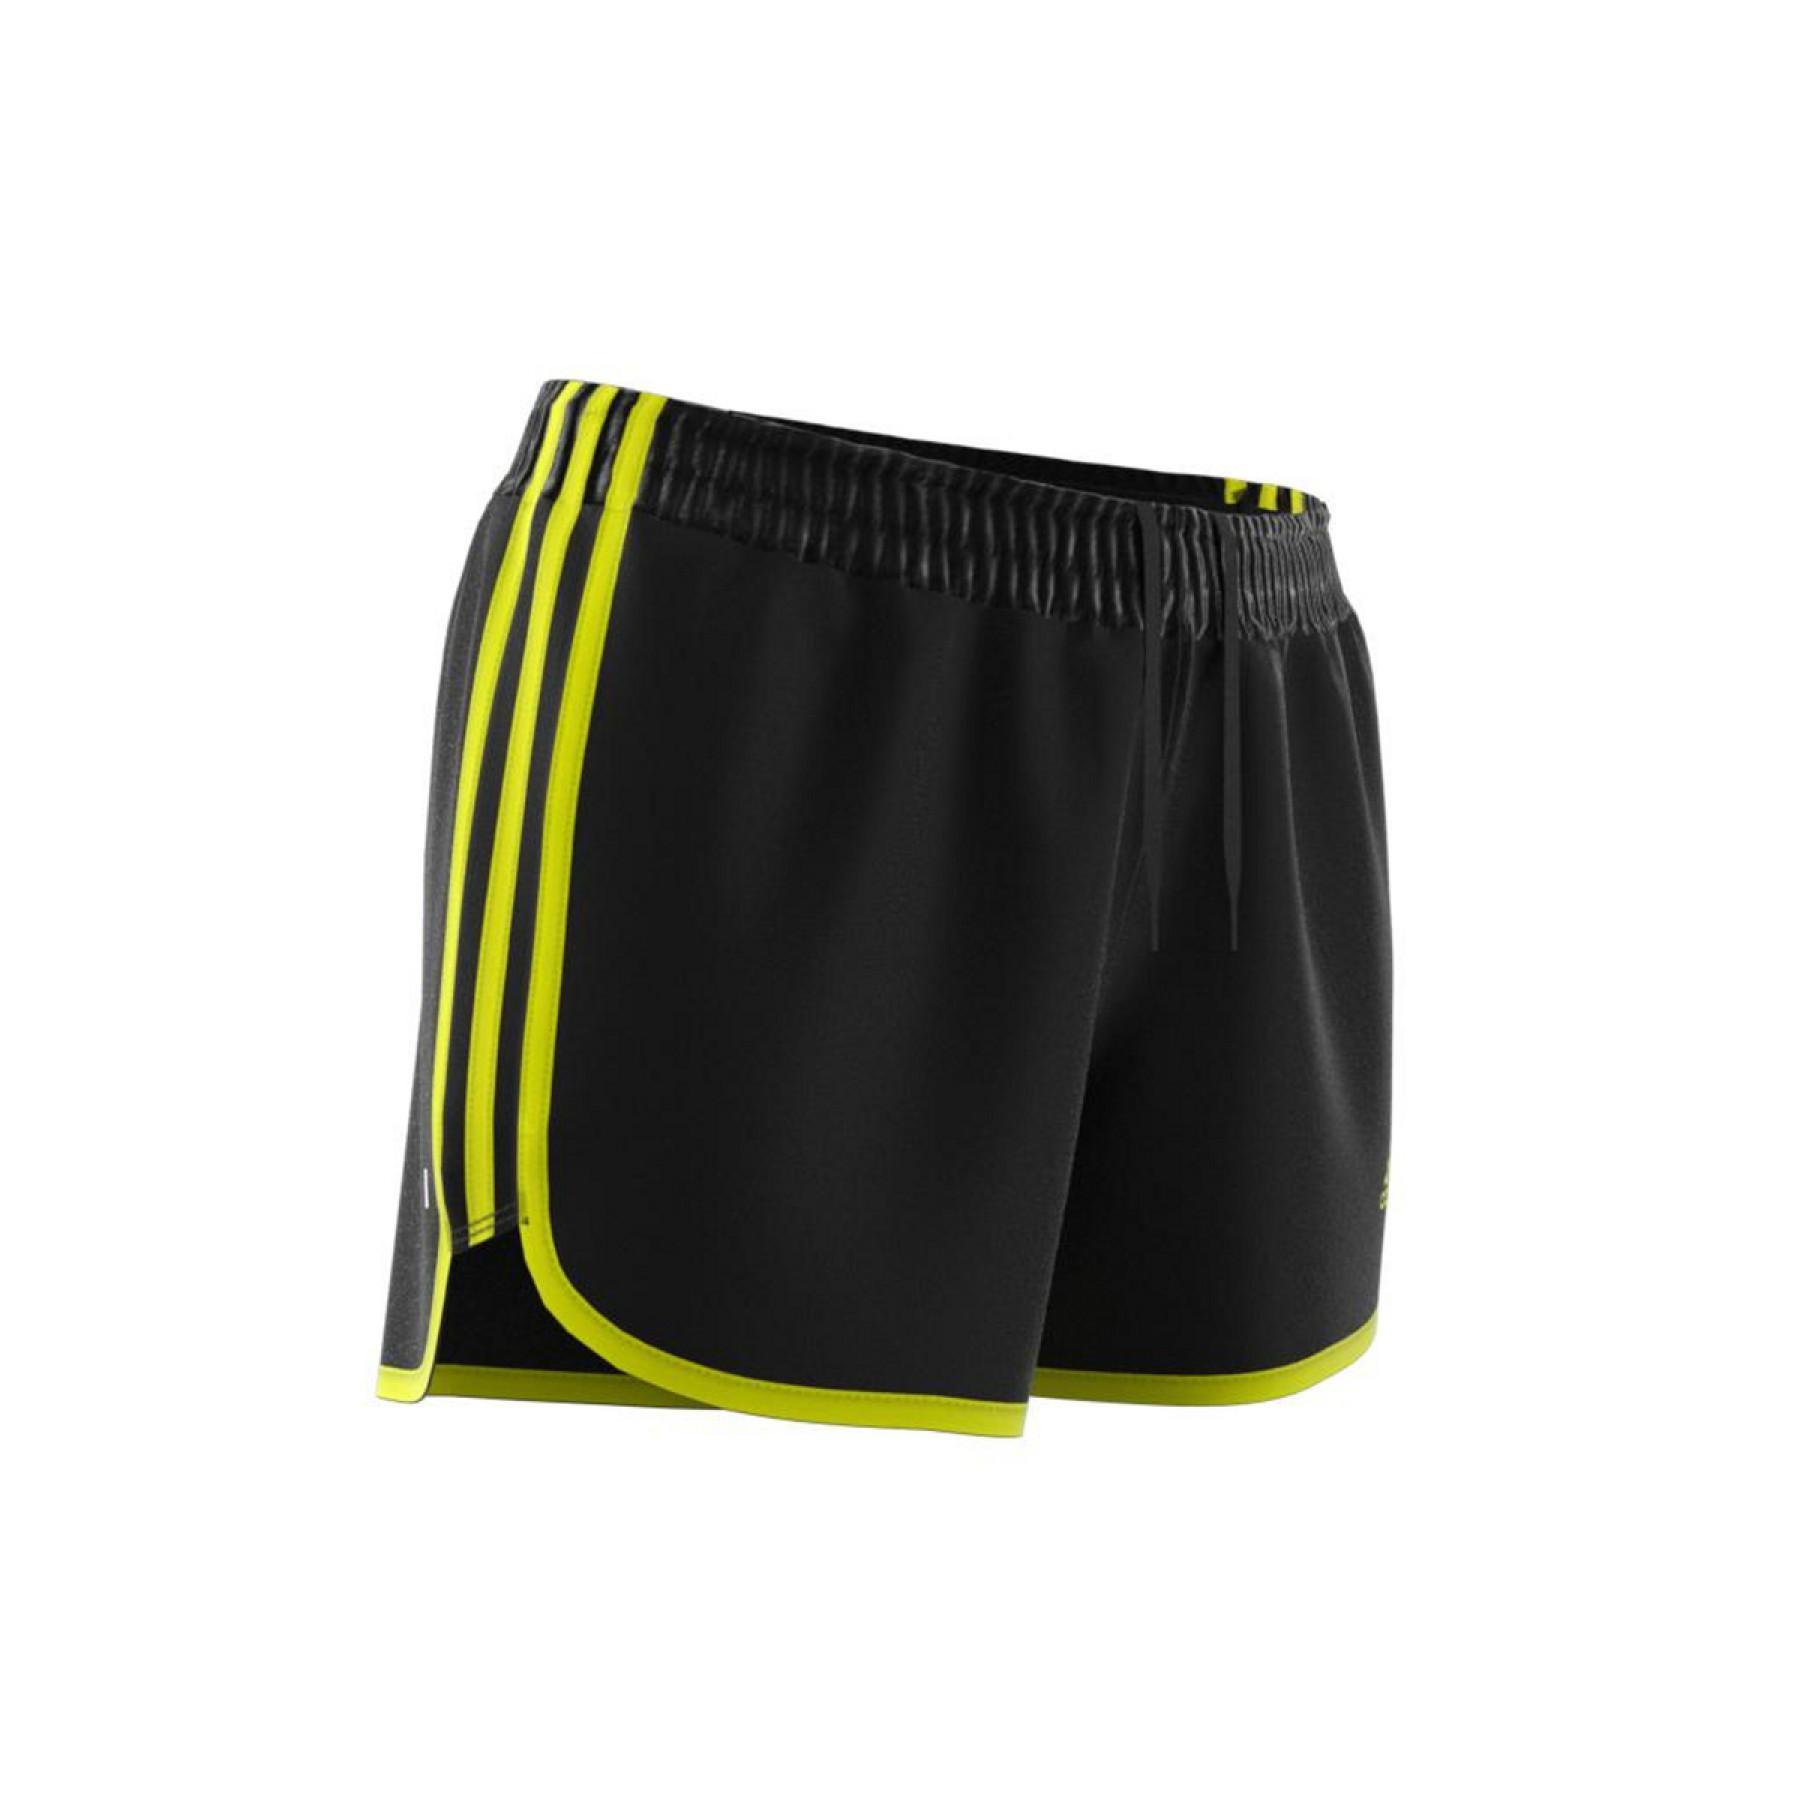 Pantalones cortos de mujer adidas Marathon 20